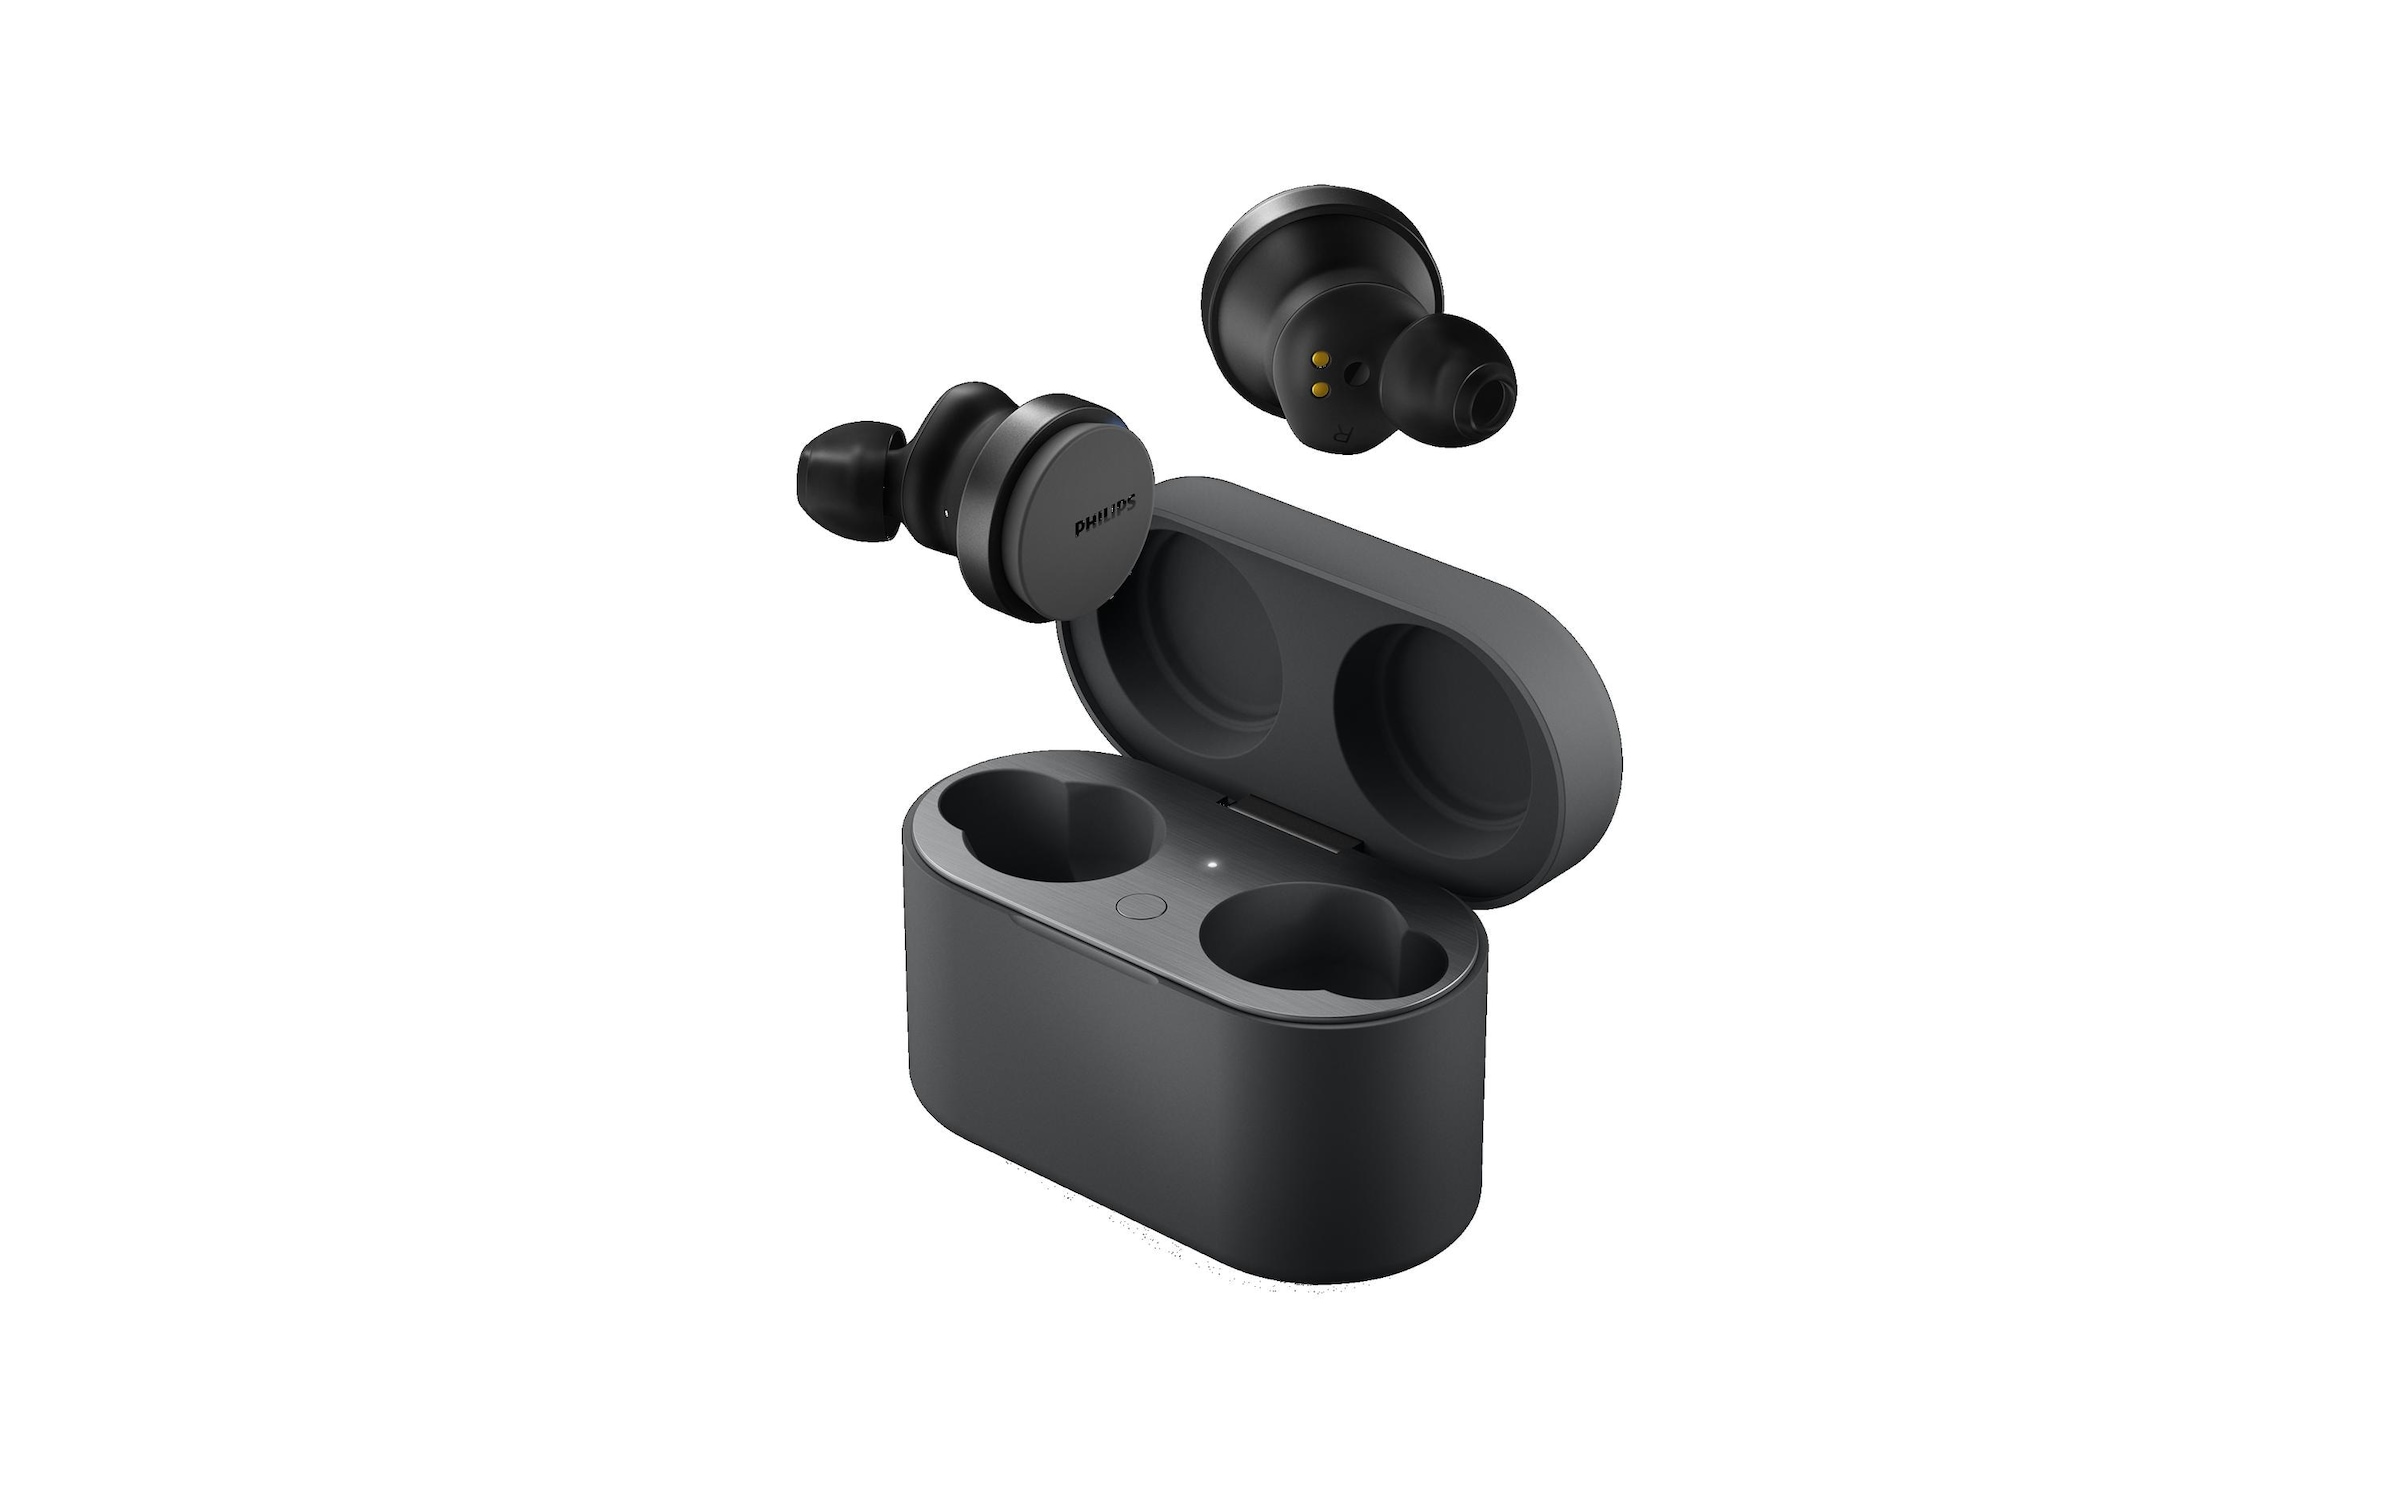 Philips wireless In-Ear-Kopfhörer »True Wireless«, Bluetooth, Geräuschisolierung-Sprachsteuerung